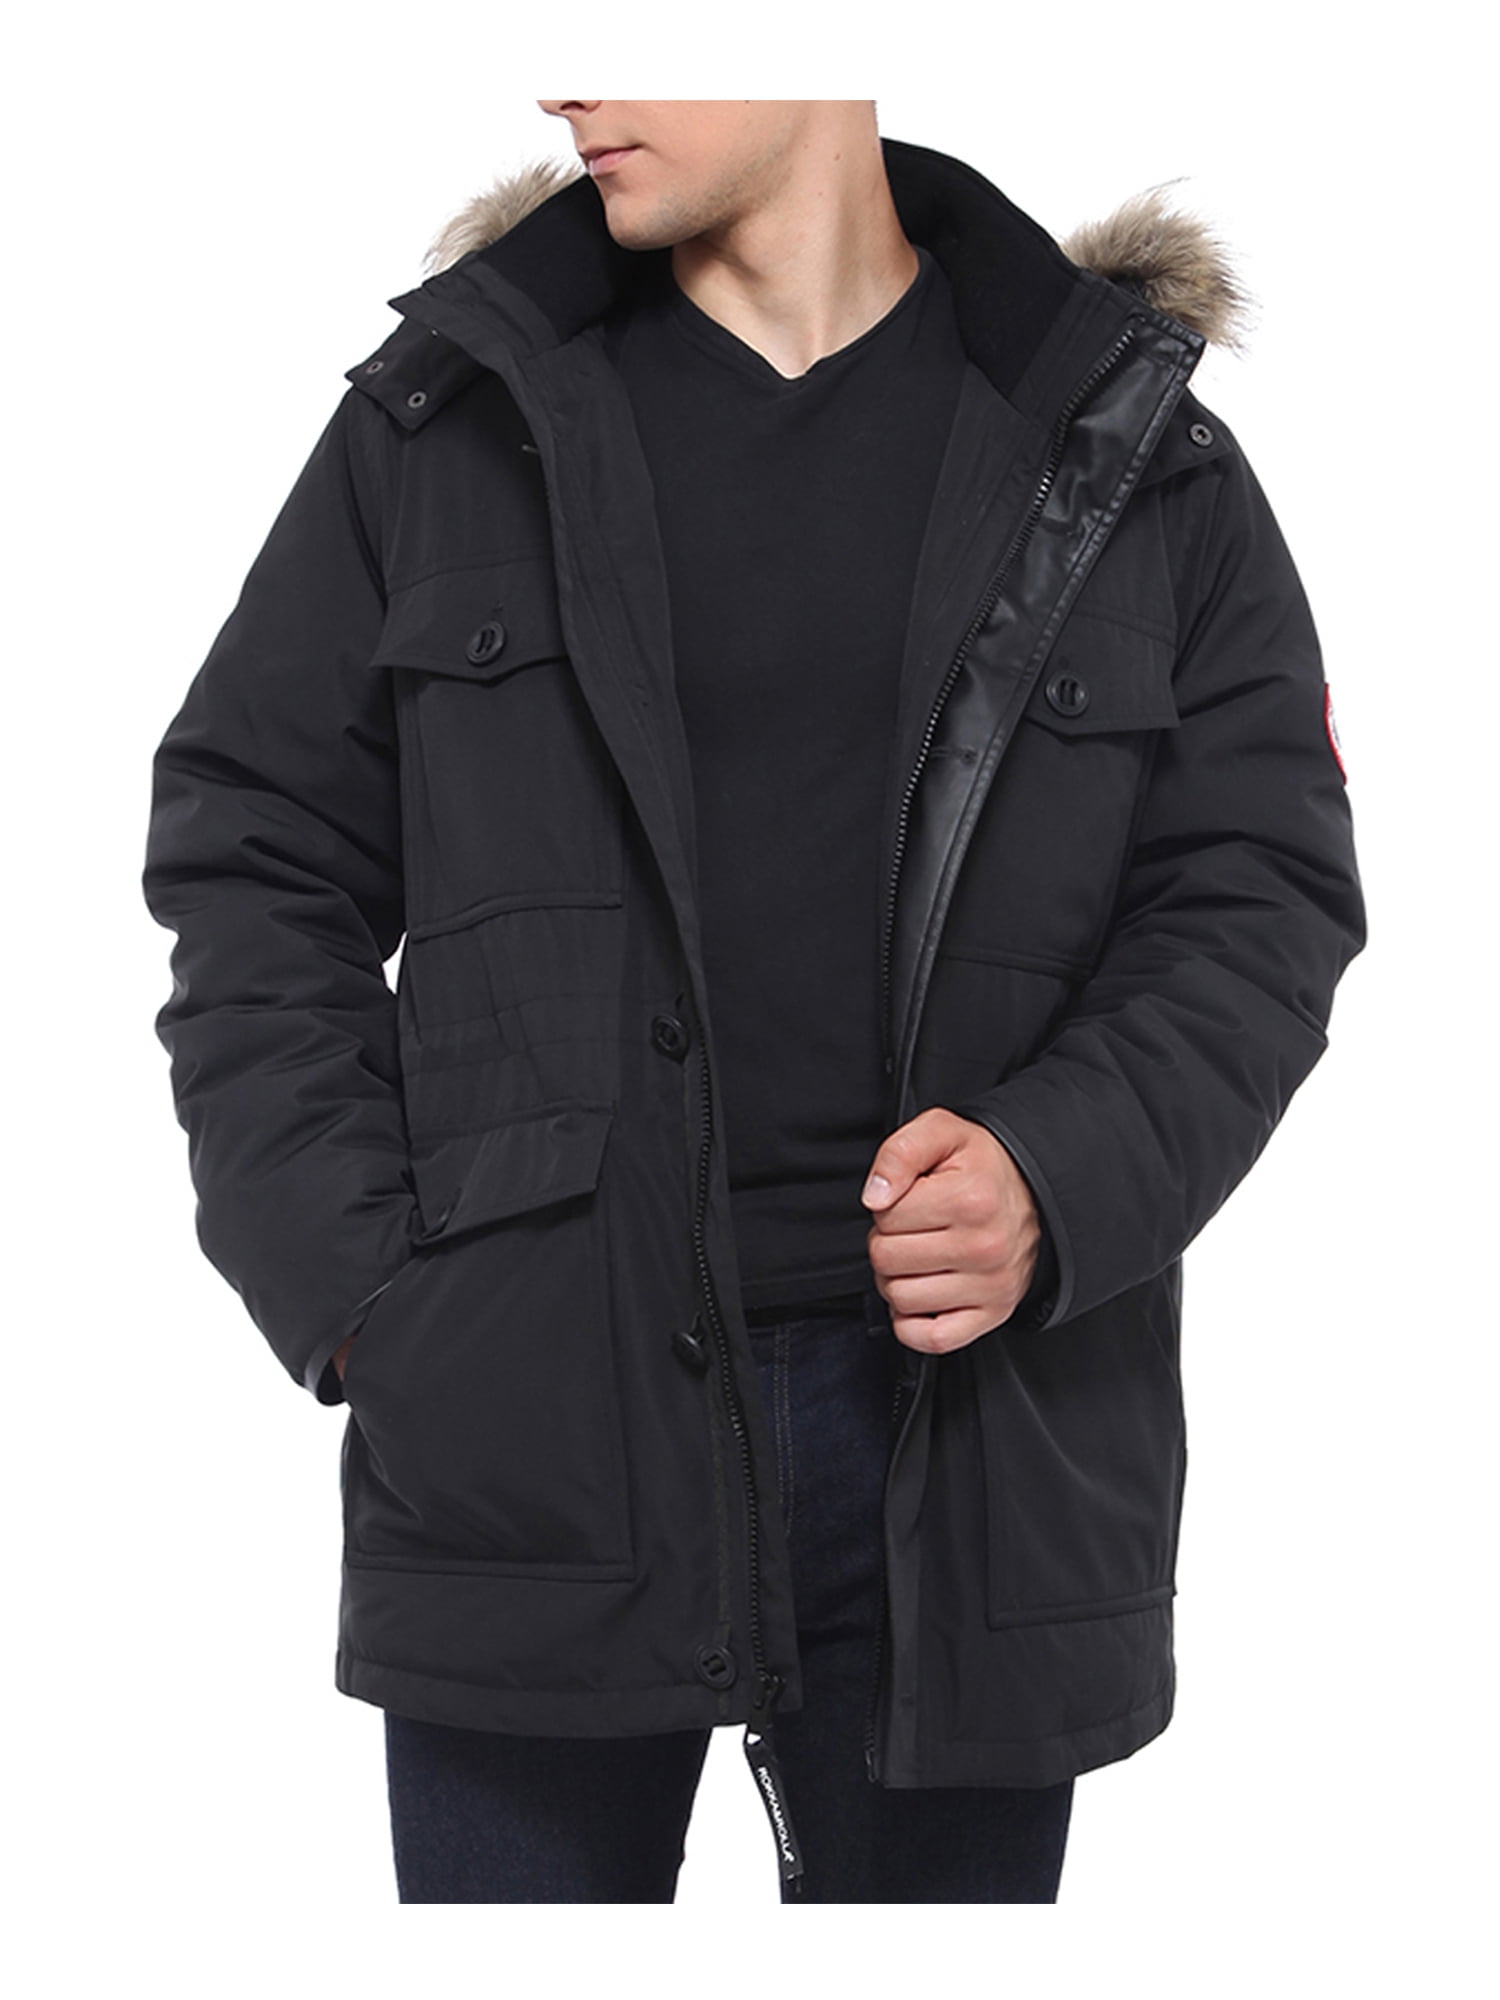 U-shot Men Winter Black Warm Jacket Hooded Outwear Removable Coat